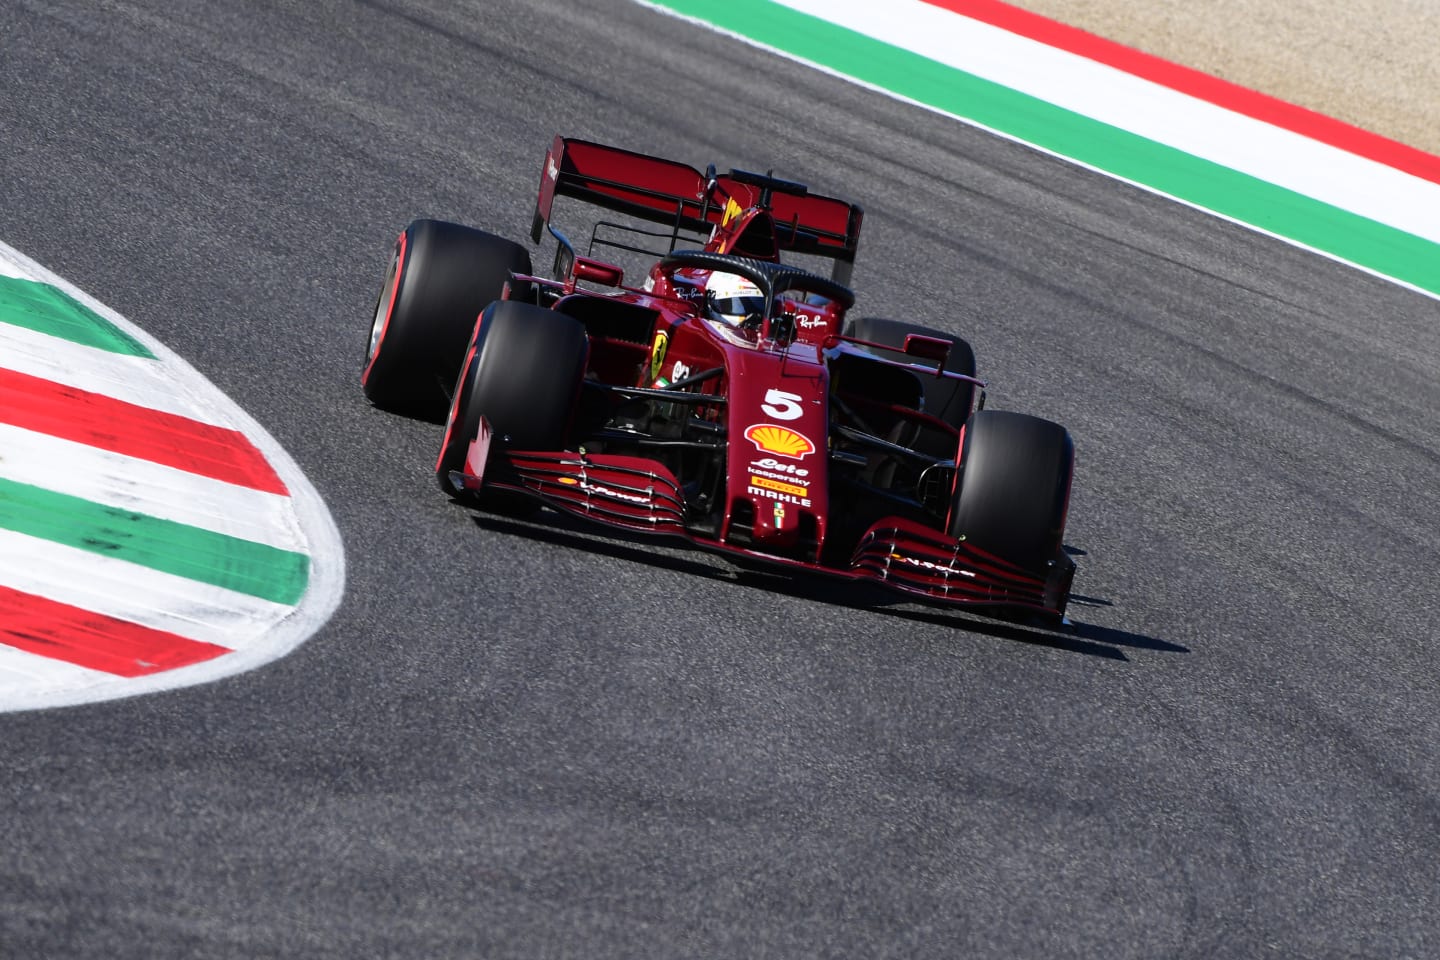 SCARPERIA, ITALY - SEPTEMBER 12: Sebastian Vettel of Germany driving the (5) Scuderia Ferrari